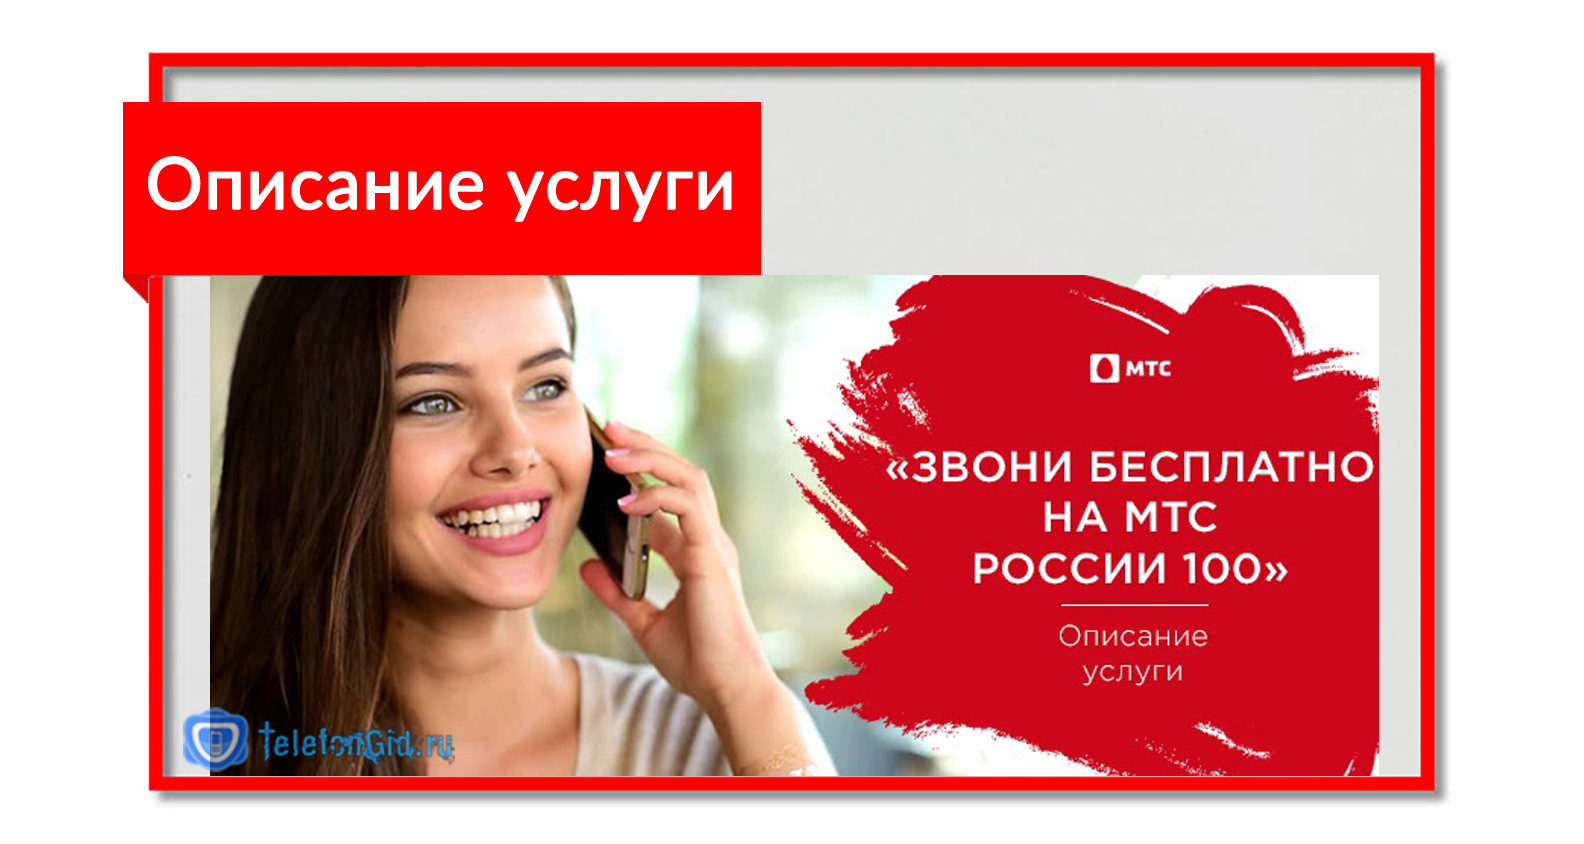 Звони бесплатно на мтс россии 100 – стоимость услуги и как подключить и отключить ее